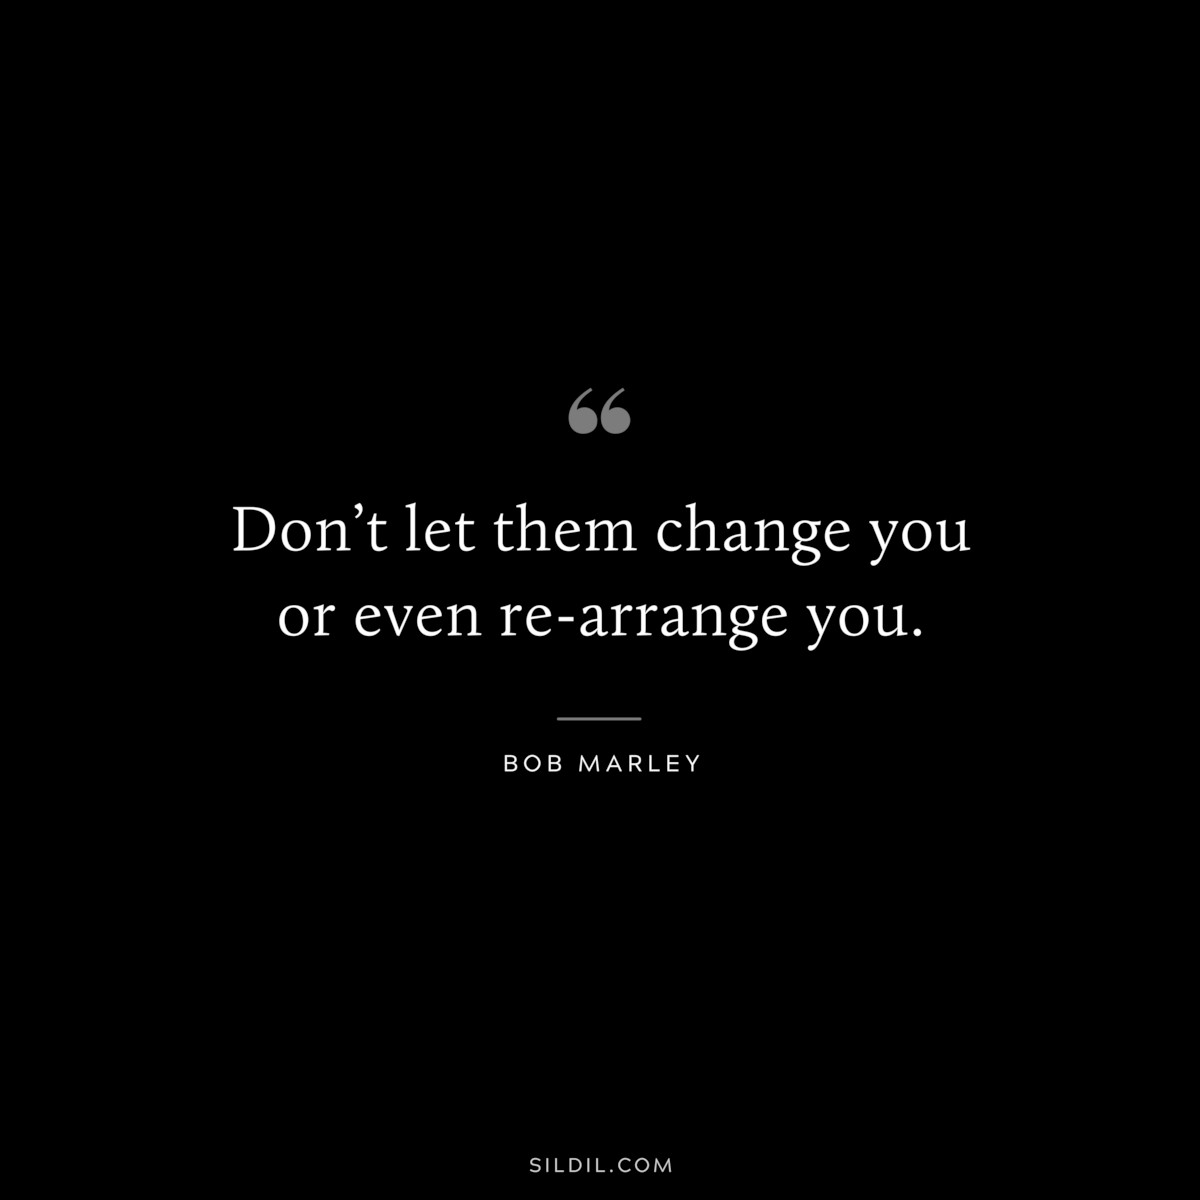 Don’t let them change you or even re-arrange you. ― Bob Marley